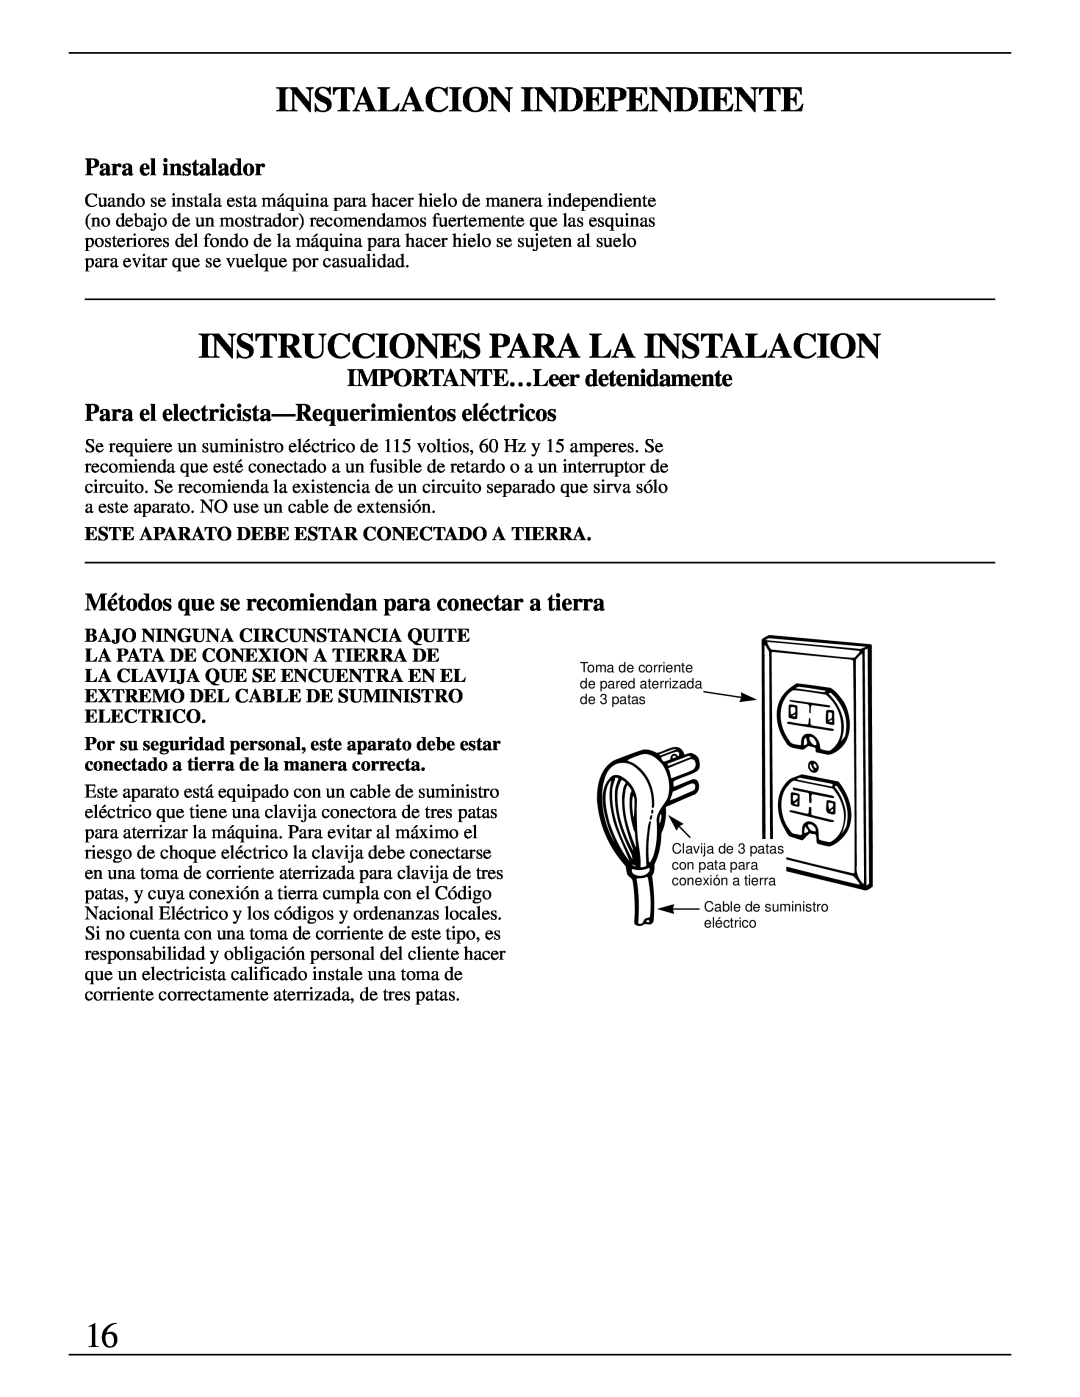 GE Monogram ZDIW50 Instalacion Independiente, Instrucciones Para La Instalacion, Para el instalador 